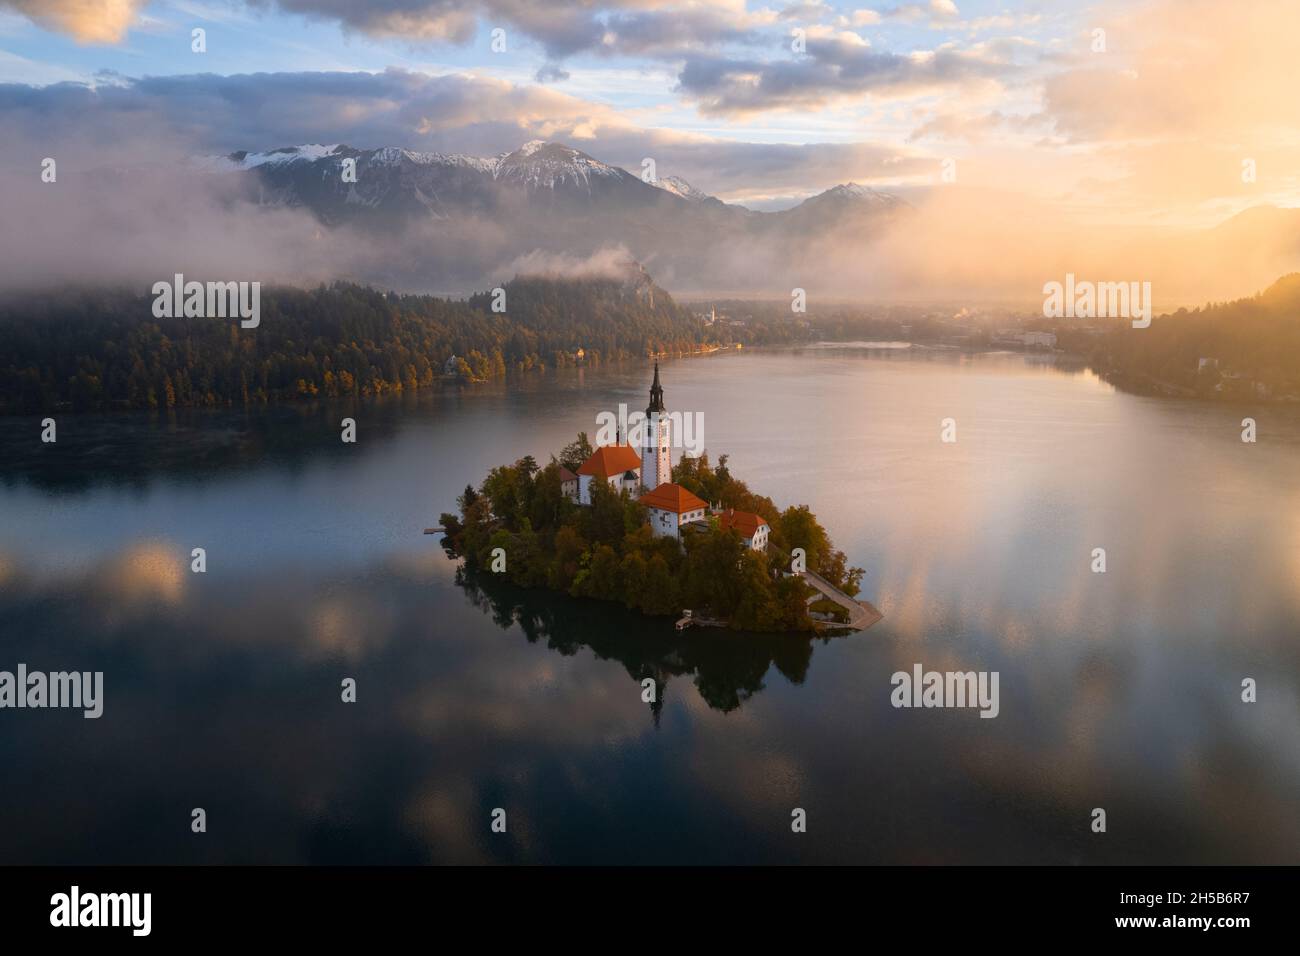 Île sur le lac de Bled au lever de Soleil - Octobre 2021 - Bled - Slovénie Stockfoto